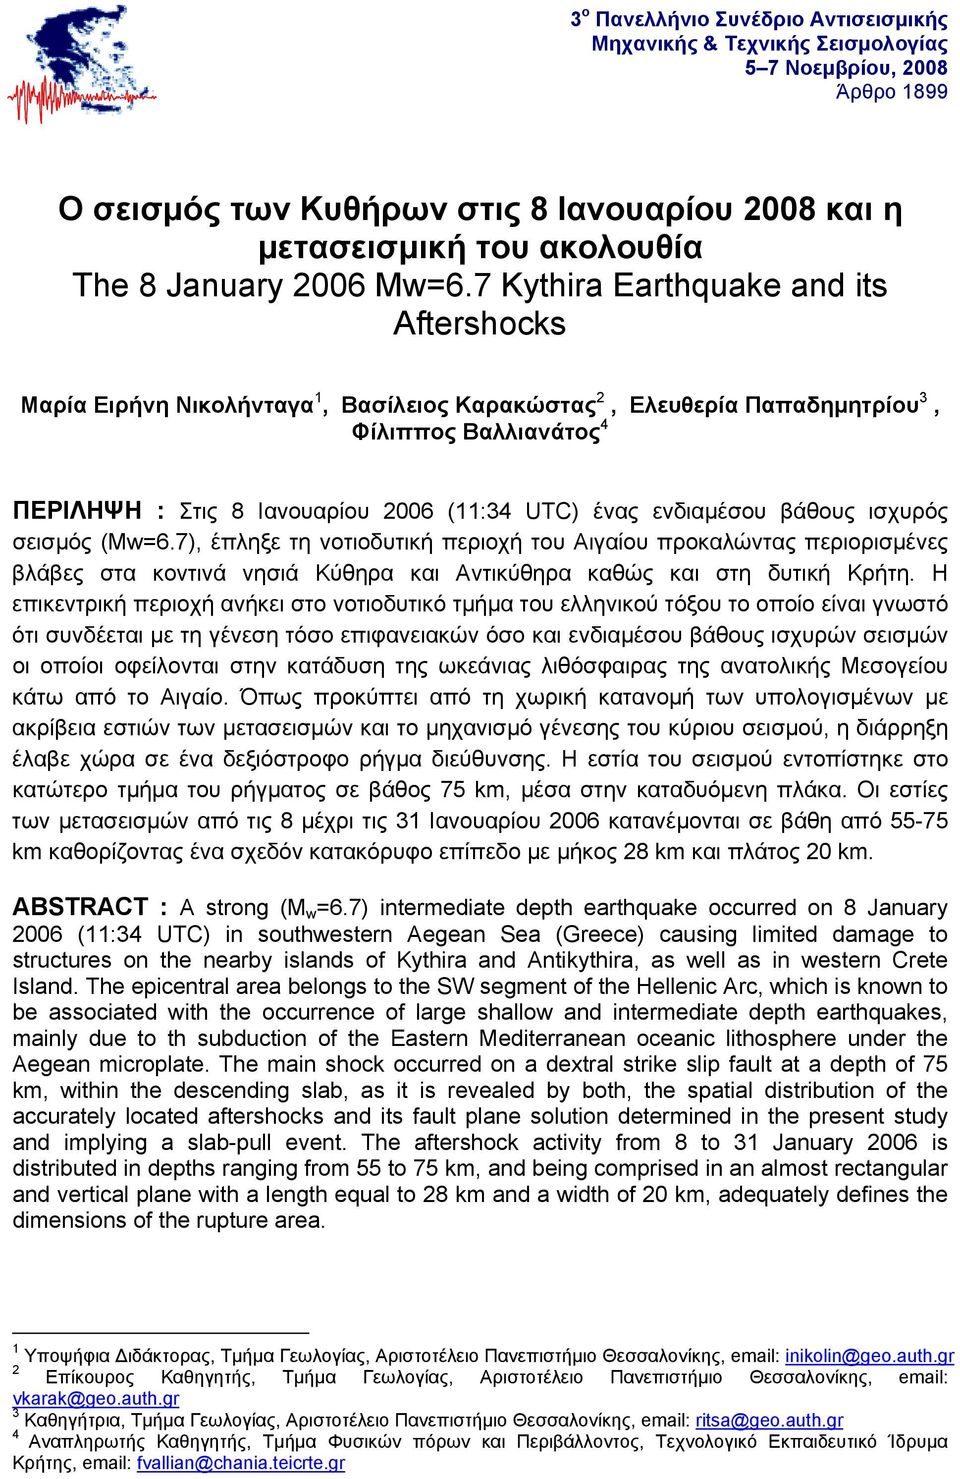 ενδιαμέσου βάθους ισχυρός σεισμός (Mw=6.7), έπληξε τη νοτιοδυτική περιοχή του Αιγαίου προκαλώντας περιορισμένες βλάβες στα κοντινά νησιά Κύθηρα και Αντικύθηρα καθώς και στη δυτική Κρήτη.